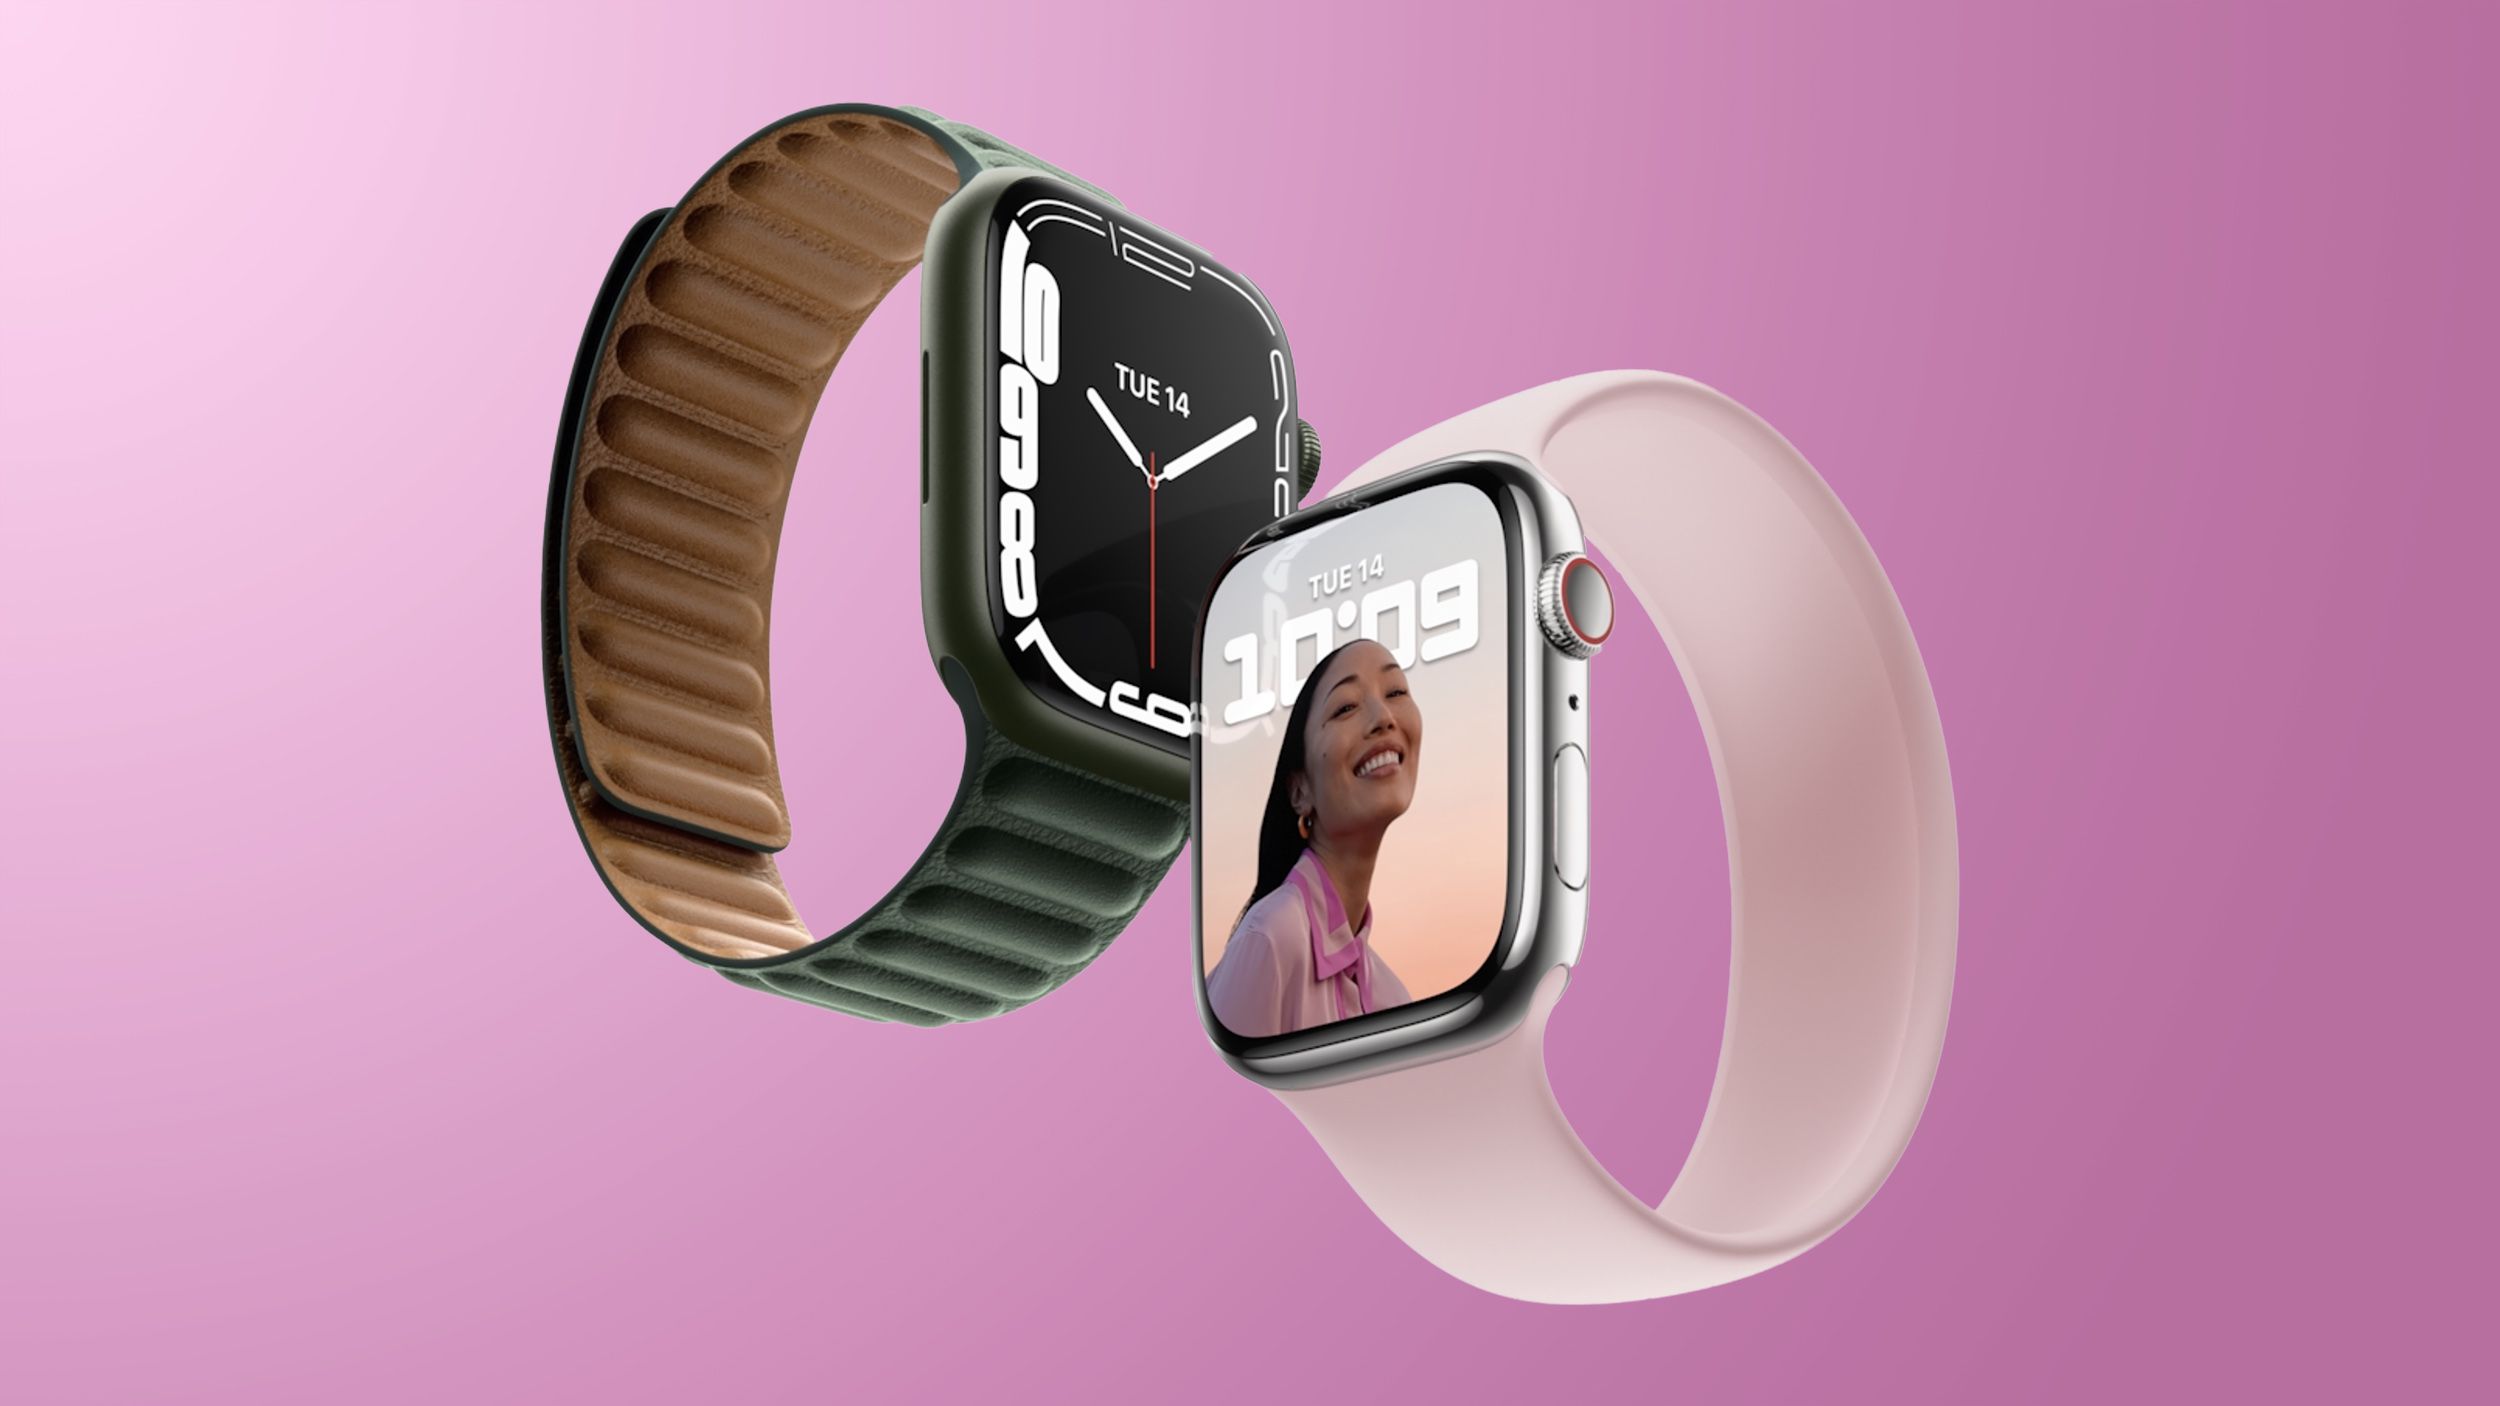 Ming-Chi Kuo bestätigt, dass drei Apple Watch-Modelle im Jahr 2022 erscheinen, einschließlich der robusten Extremsport-Version